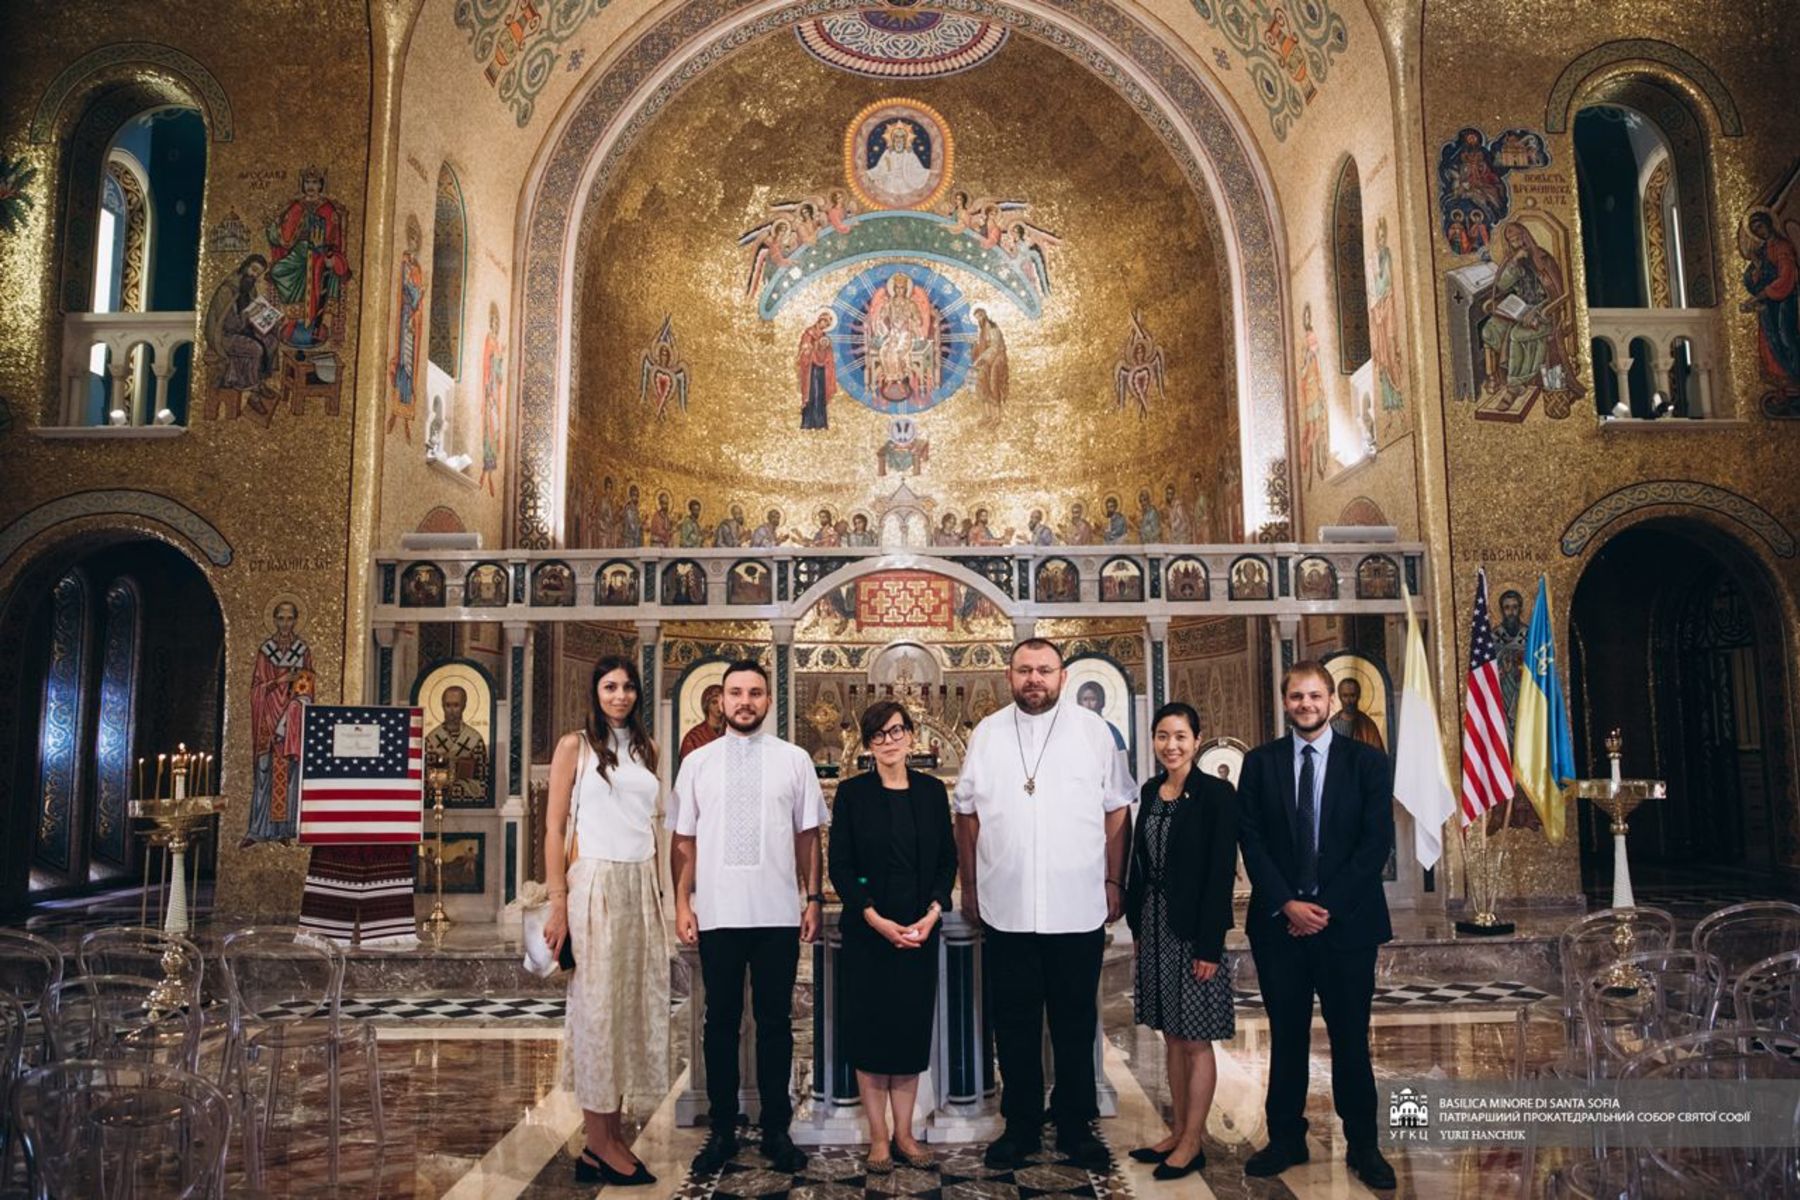 Дипломатична місія США при Ватикані відвідала собор Святої Софії в Римі